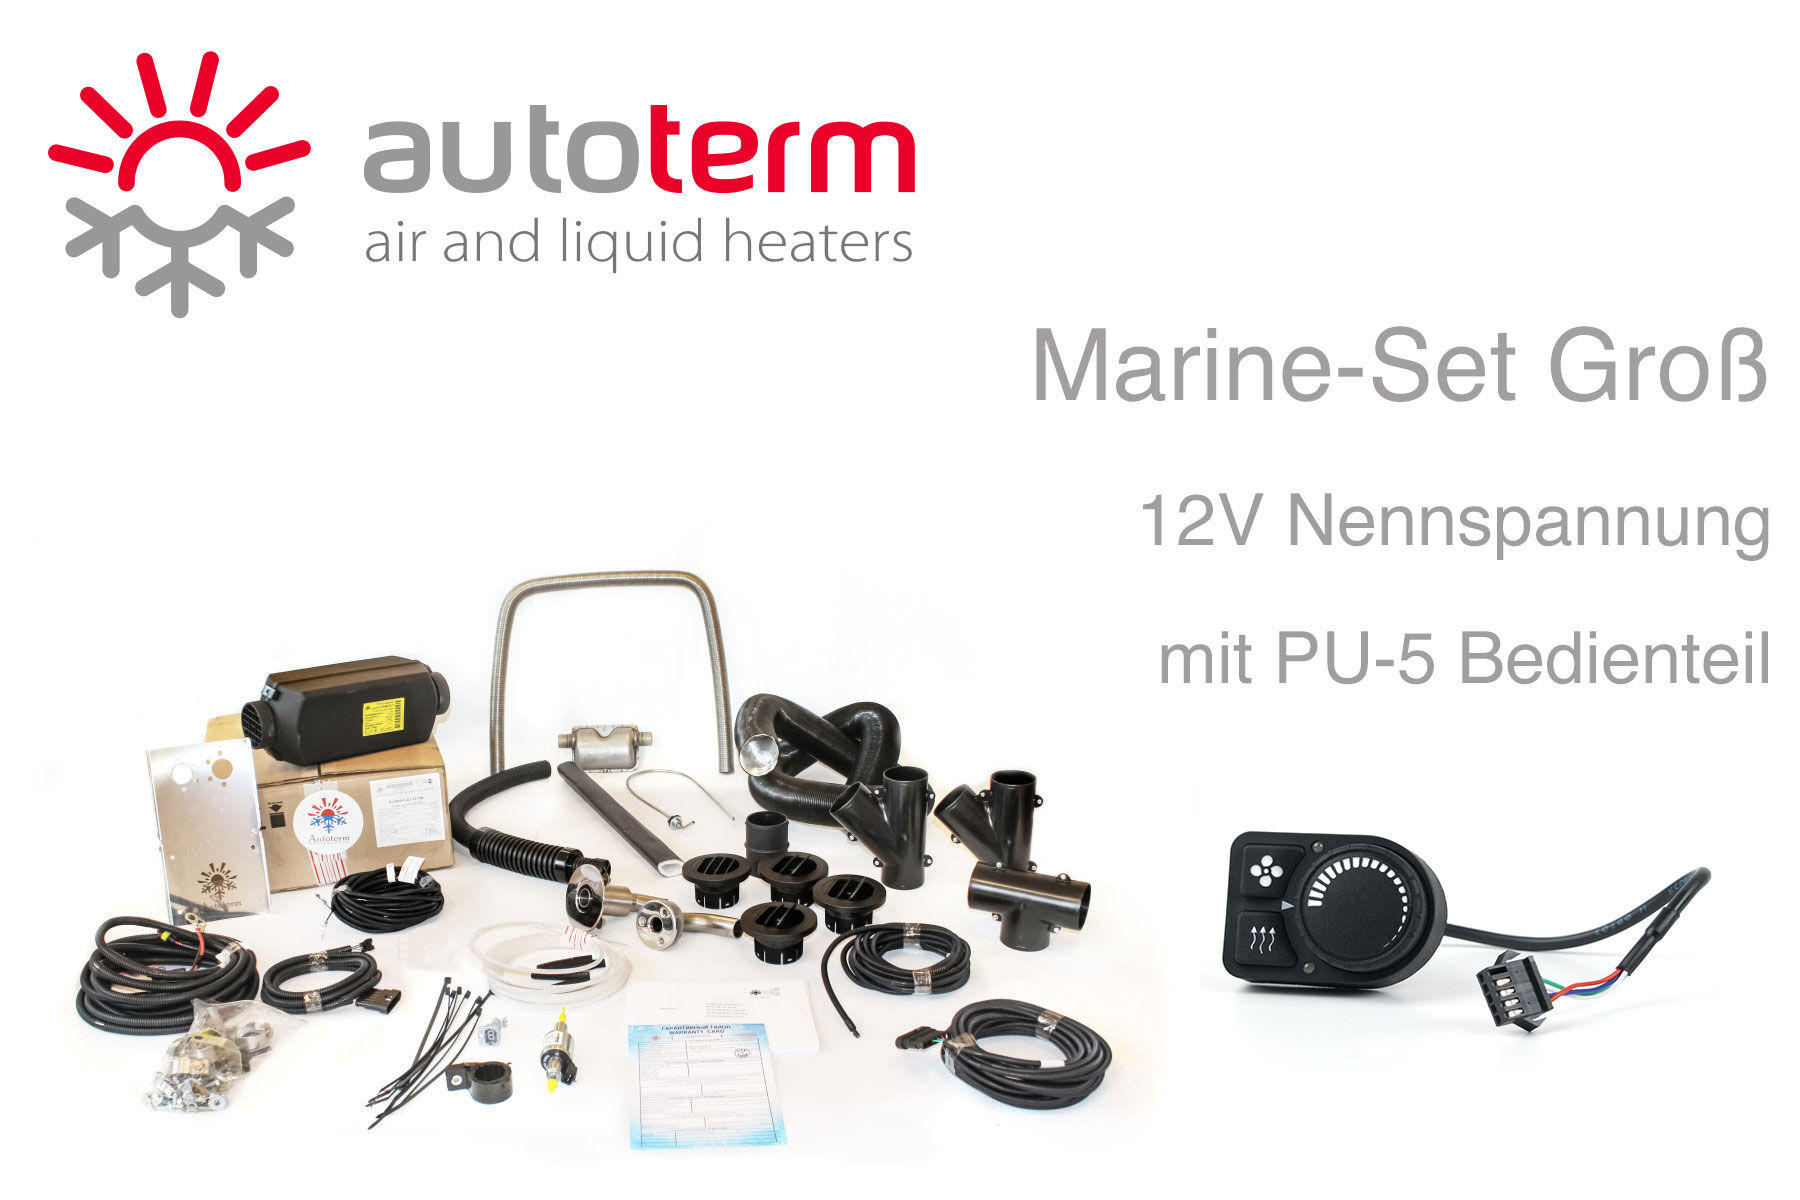 Autoterm Air 4D Diesel Warmluftheizung Marine Set groß, 12V, PU-27  Bedienteil günstig online kaufen